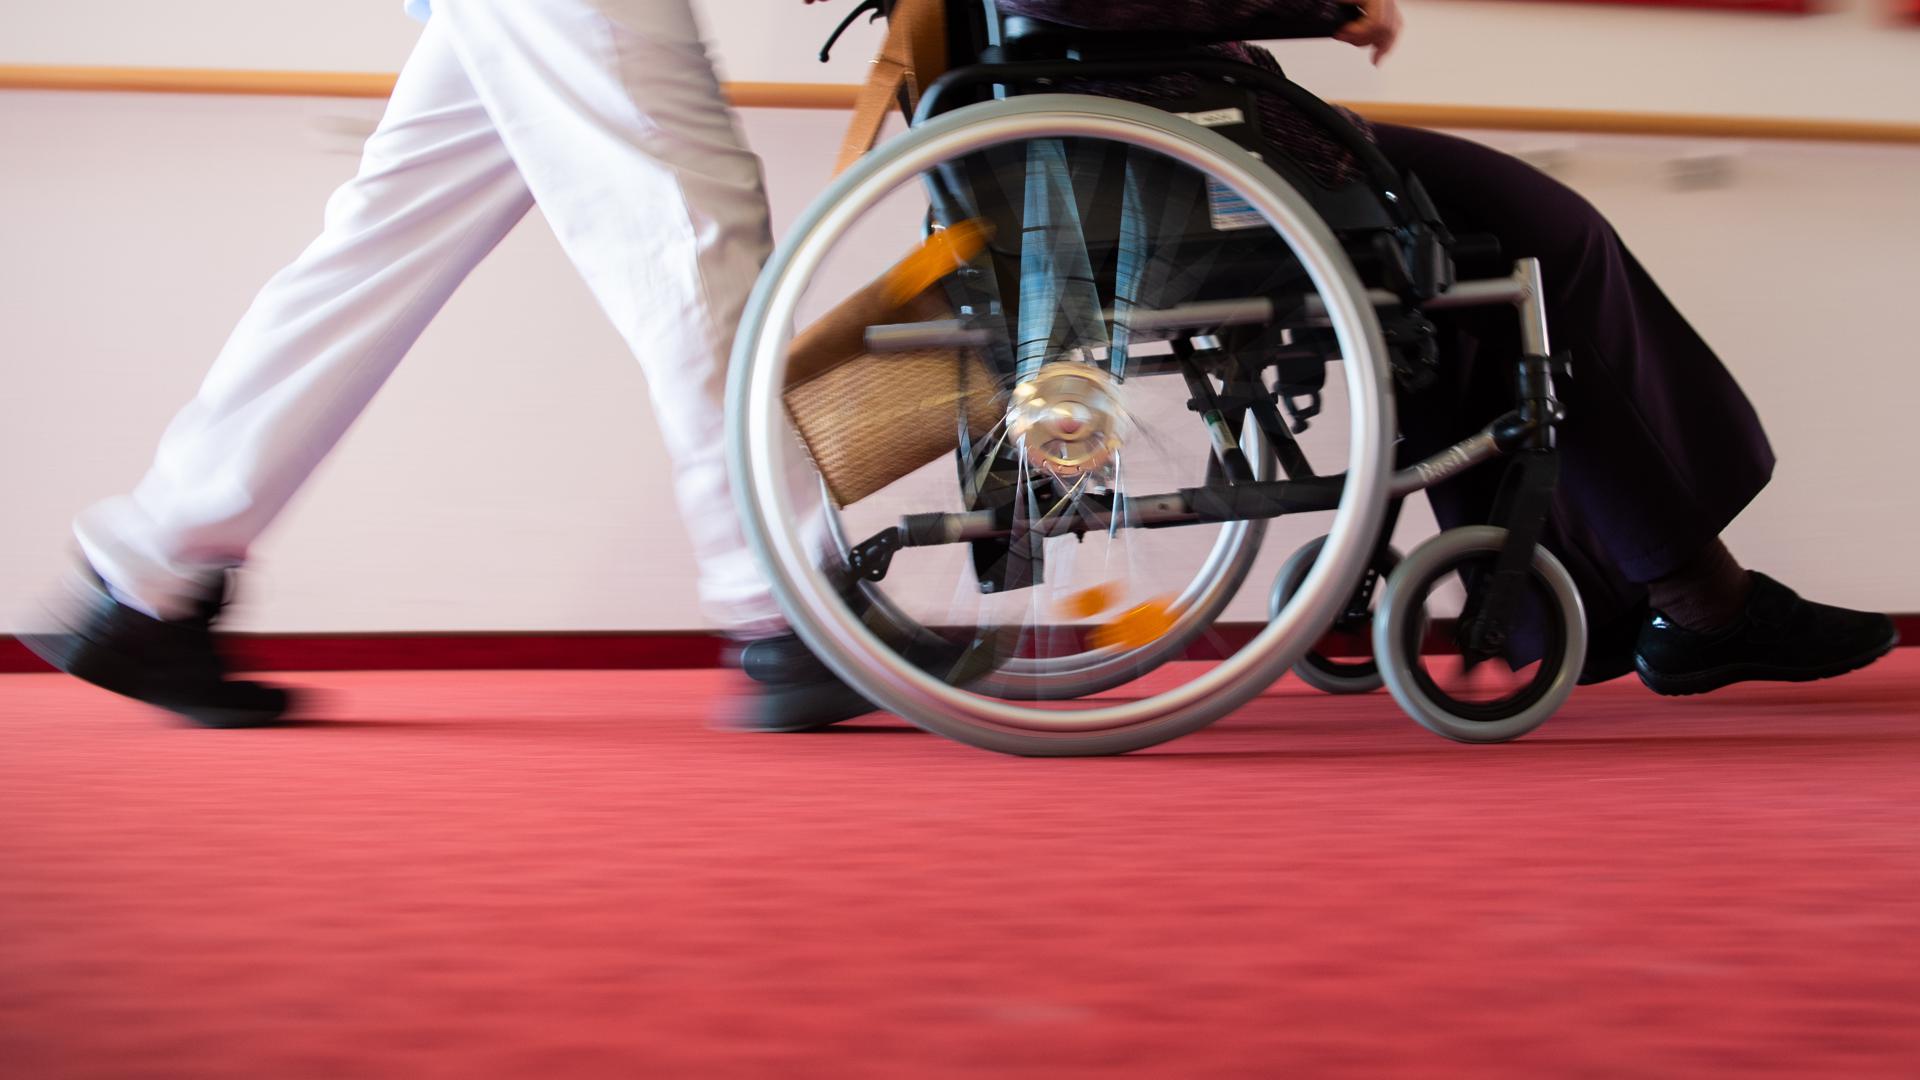 Ein Pfleger eines Pflegeheims schiebt eine Bewohnerin mit einem Rollstuhl. (zu dpa «Anwerbung ausländischer Pflegekräfte stockt wegen Corona») +++ dpa-Bildfunk +++